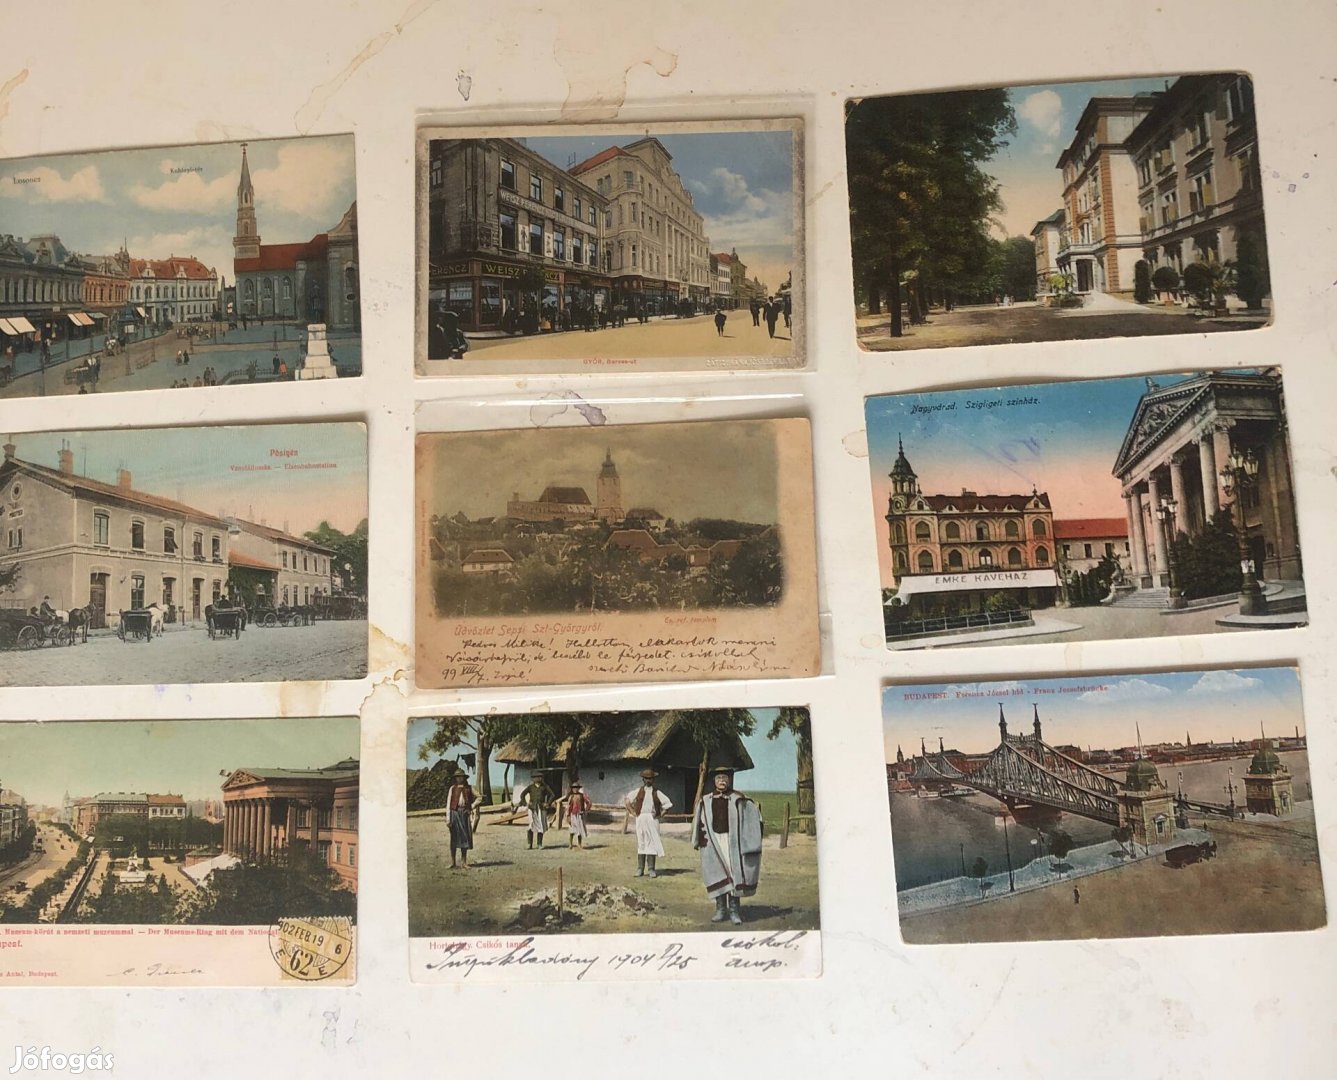 100 régi magyar képeslap: vasút, falu, város, militária